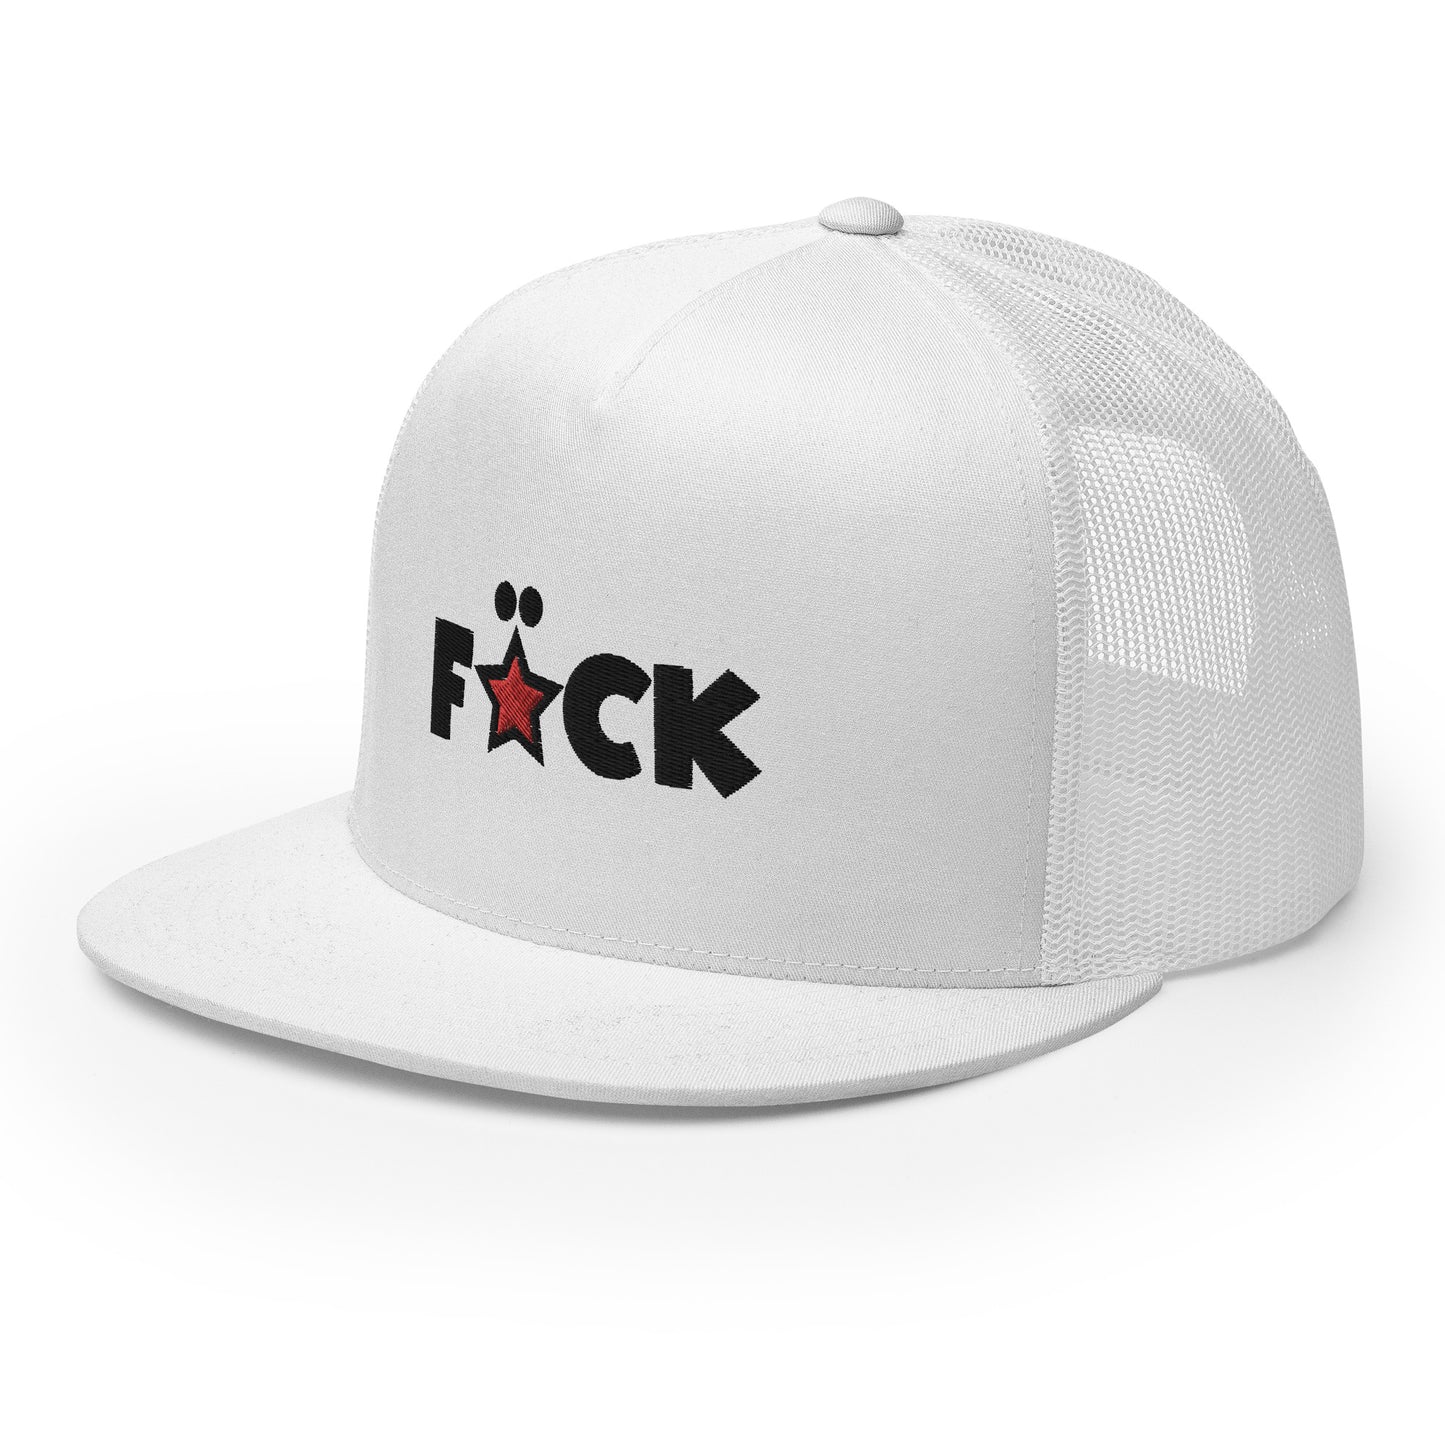 FCKSTR Hat / Trucker Cap IV